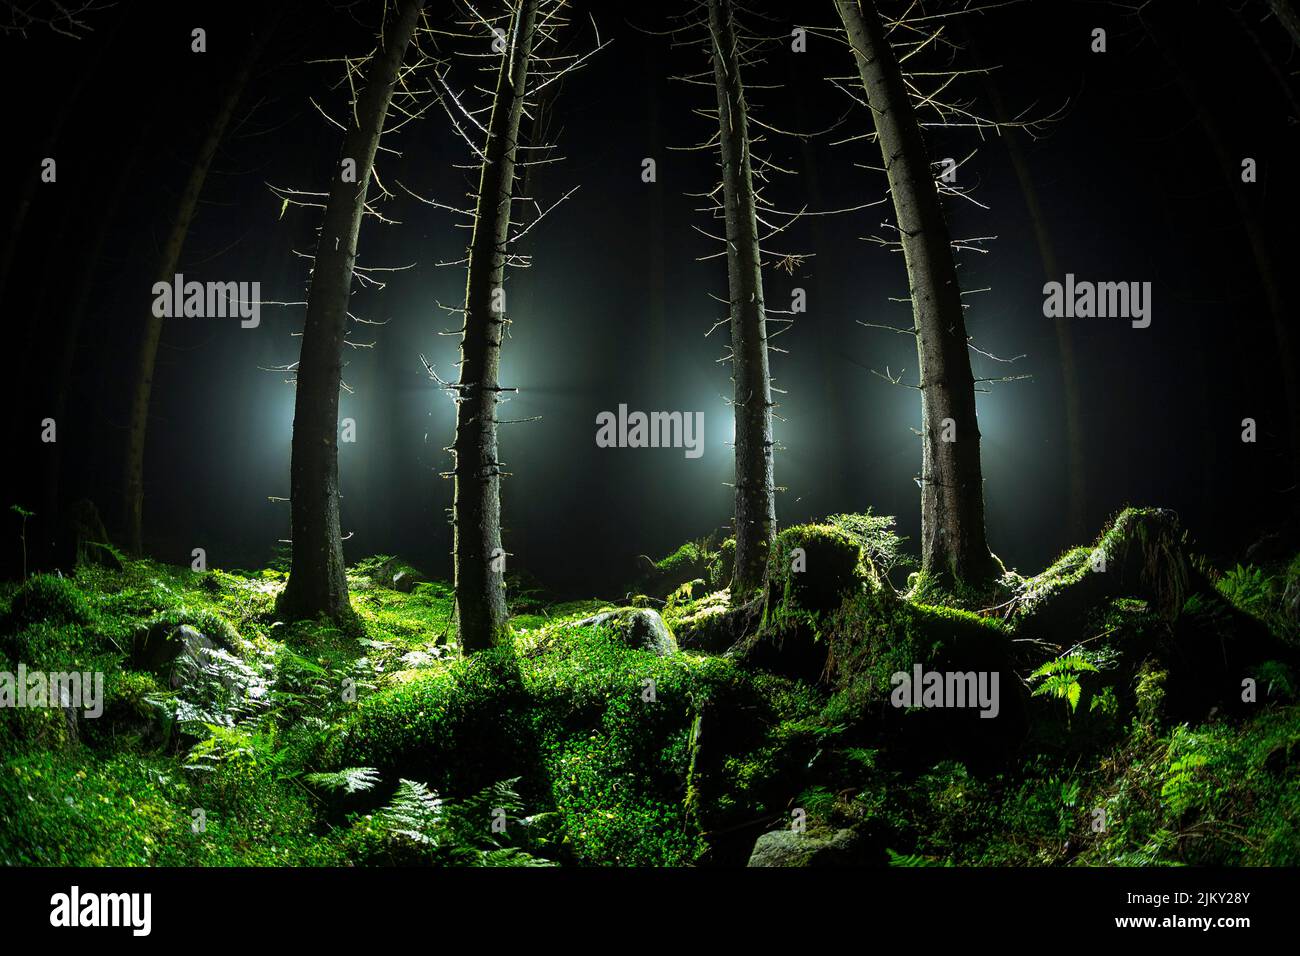 Eine Fischauge-Aufnahme von Bäumen und Gras, die im Dunkeln von hinten beleuchtet werden Stockfoto